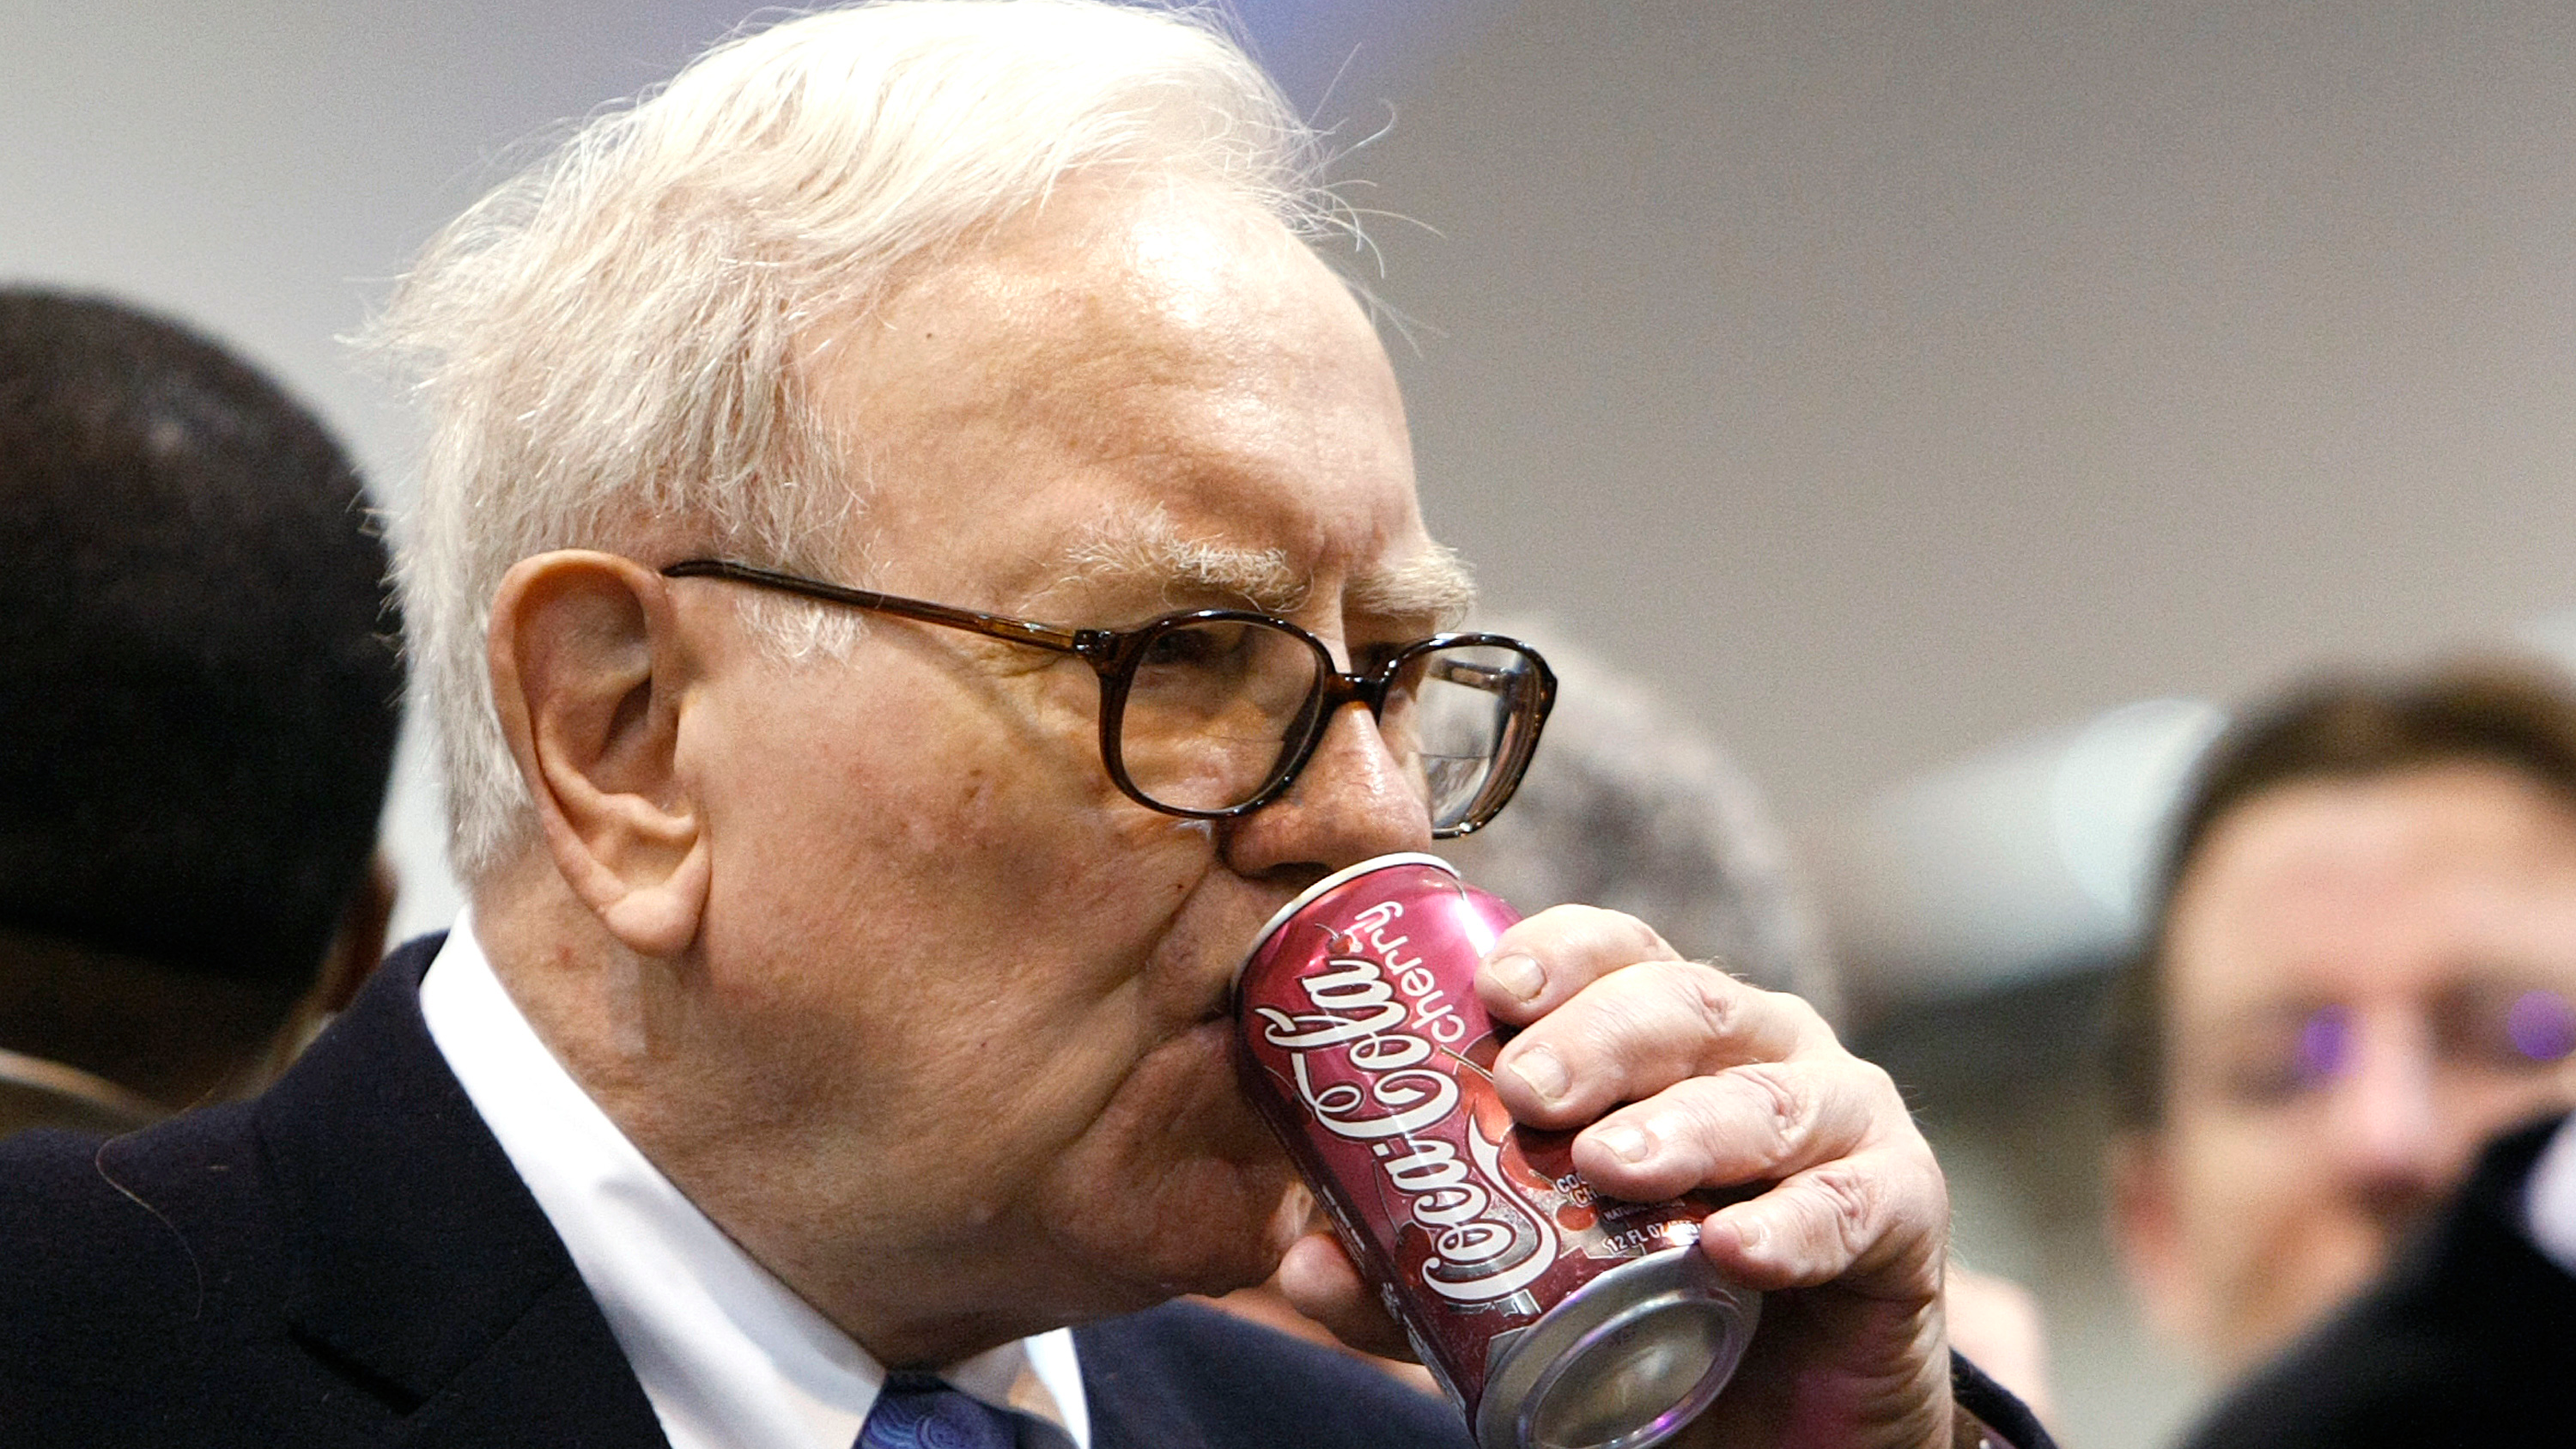 Cổ phần chính của ông đang nằm trong Amazon, Apple và Coca-Cola. Warren Buffett hiện ở vị trí giàu thứ 3 thế giới với khối tài sản 85 tỉ USD. Ảnh: ST